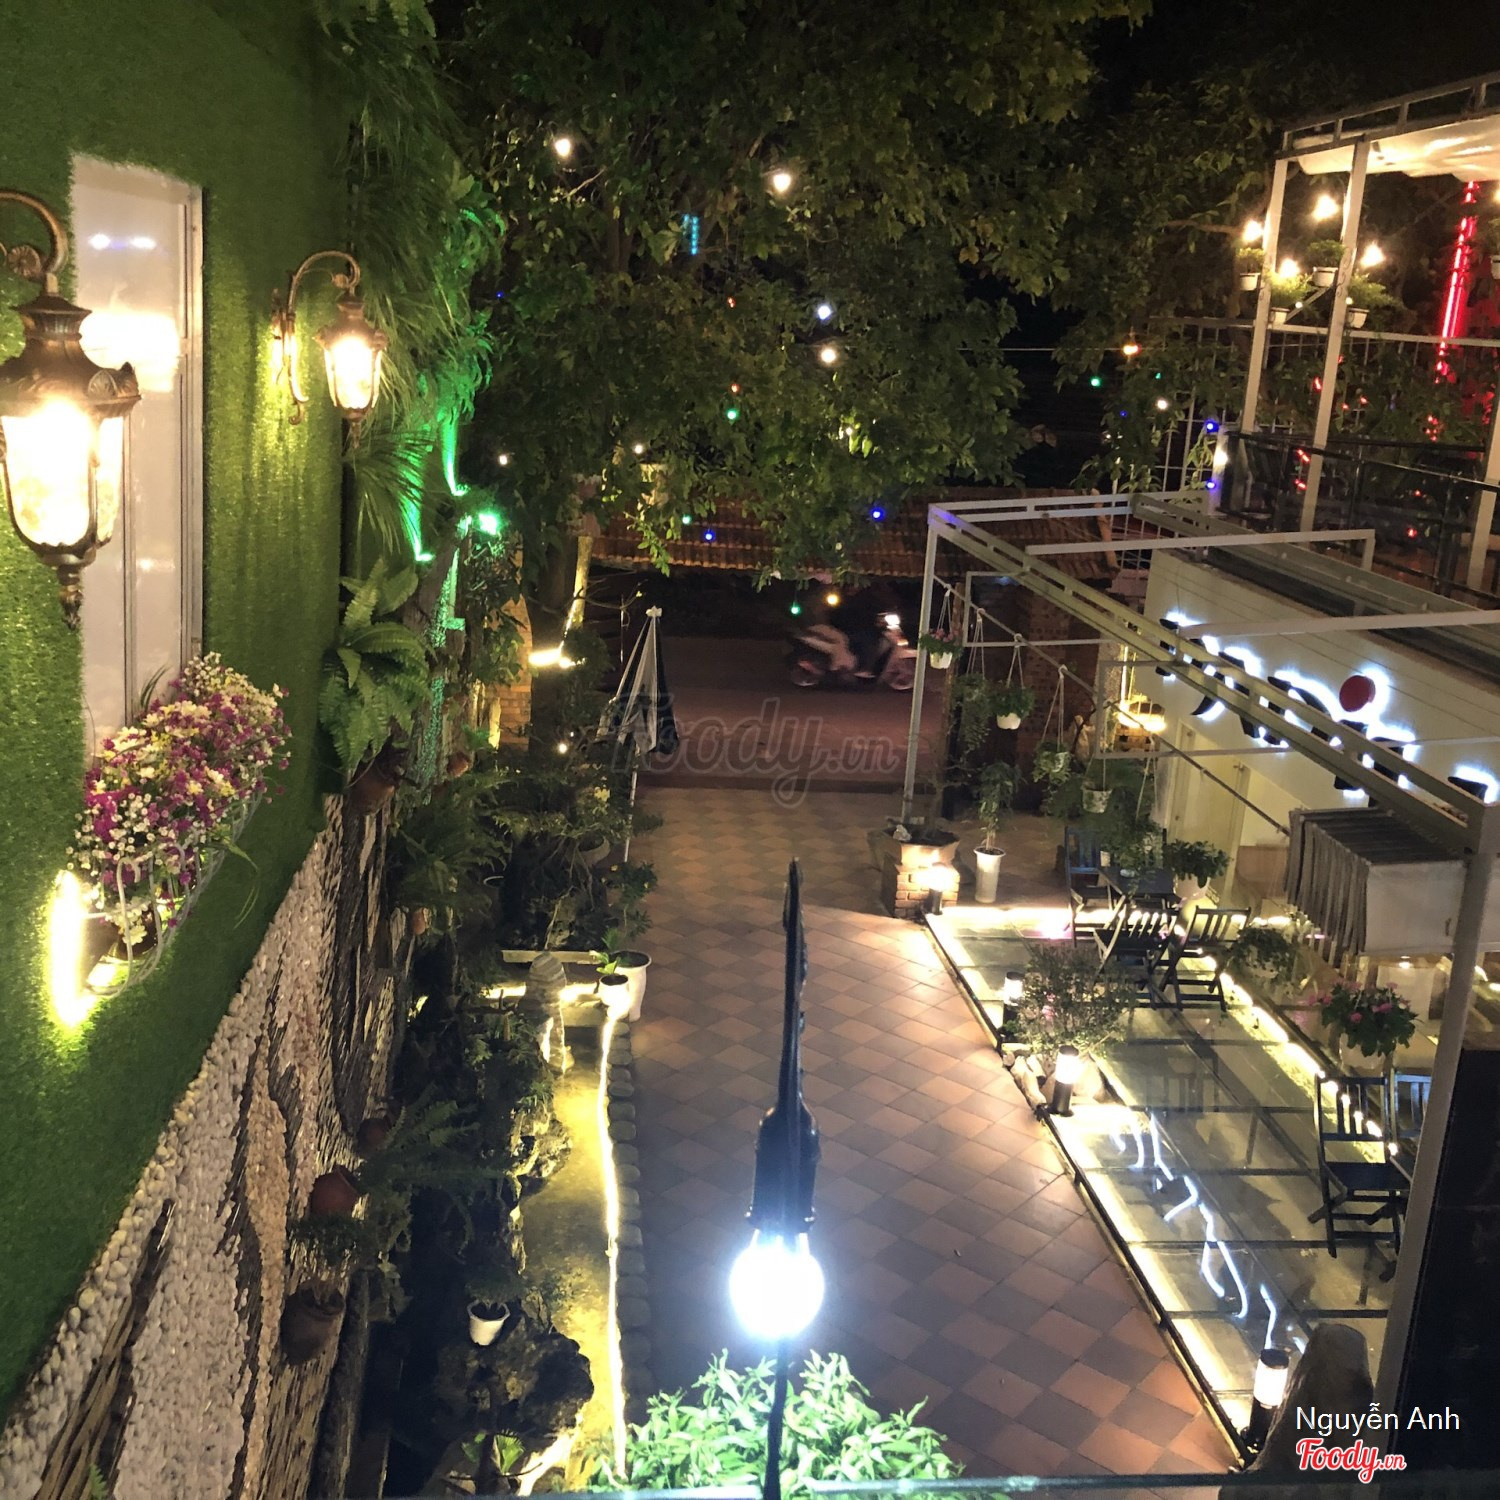 Papillon Cafe trên đường Tôn Thất Thiệp Huế có kiến trúc độc đáo và phong cách trang trí tinh tế, tạo nên không gian ấm cúng và thư giãn cho du khách đến thưởng thức những ly cà phê thơm ngon và đắm mình trong không gian yên bình.